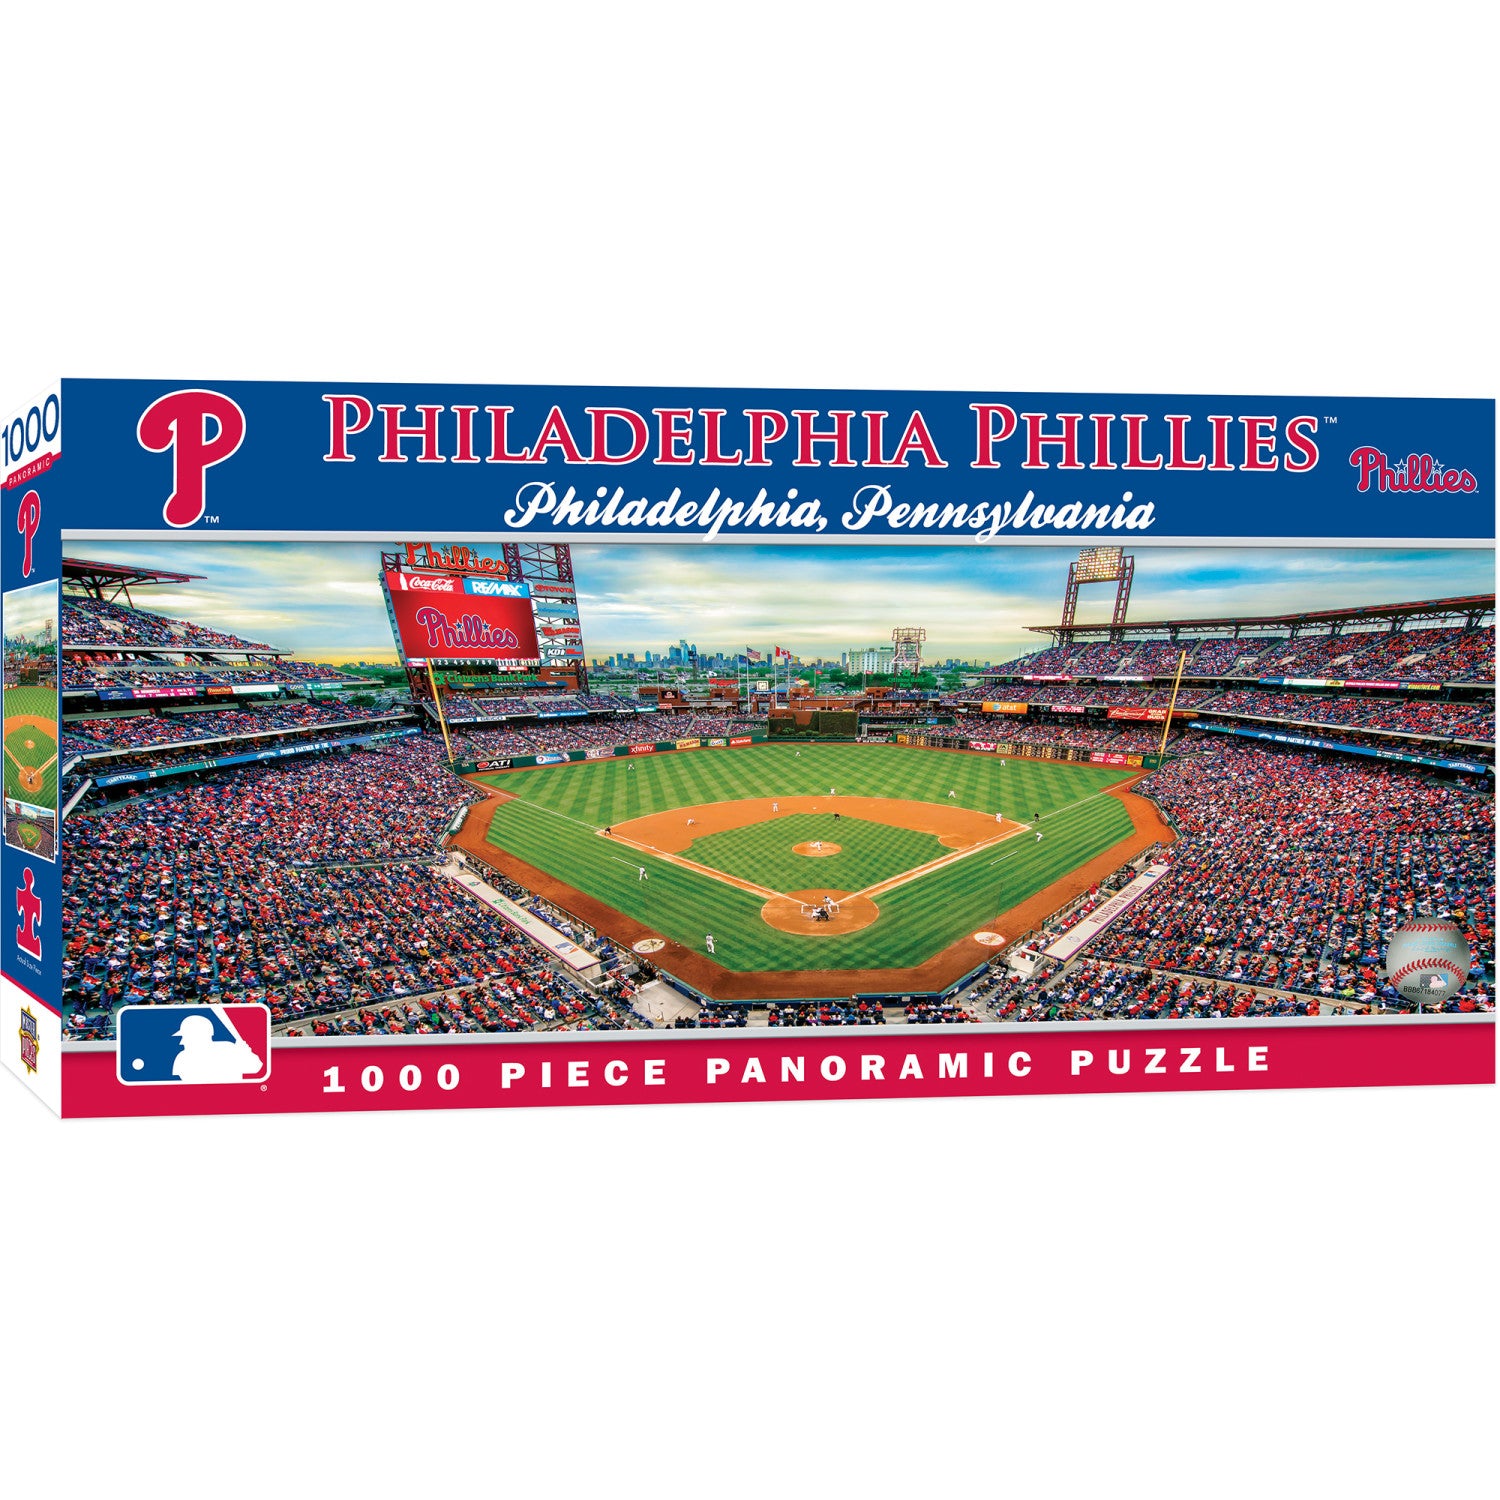 Philadelphia Phillies - 1000 Piece Panoramic Jigsaw Puzzle